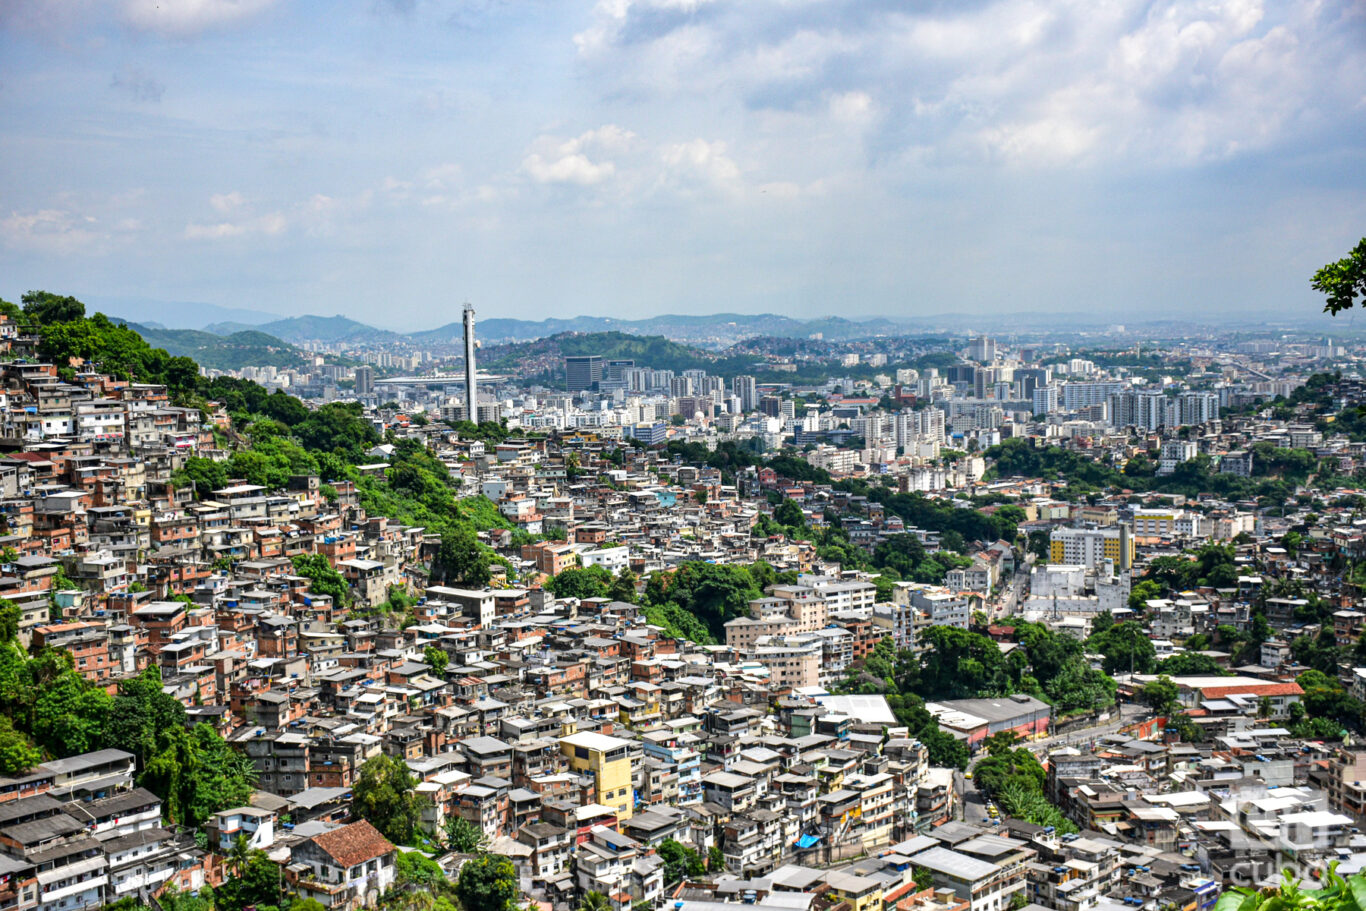 Las favelas de Río de Janeiro se extienden por toda la ciudad. Foto: Kaloian.